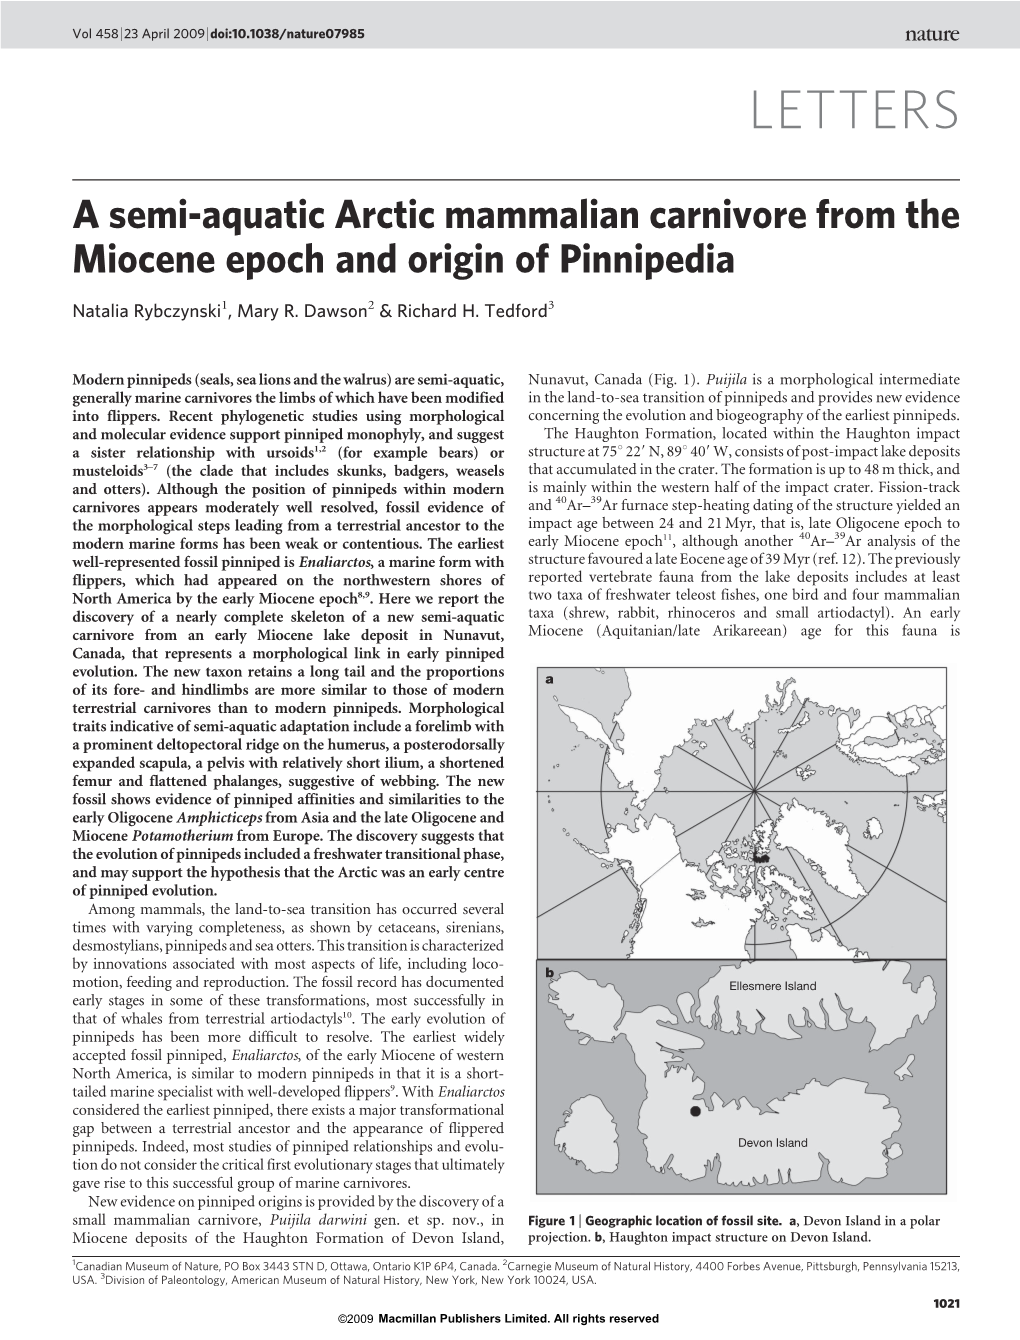 A Semi-Aquatic Arctic Mammalian Carnivore from the Miocene Epoch and Origin of Pinnipedia